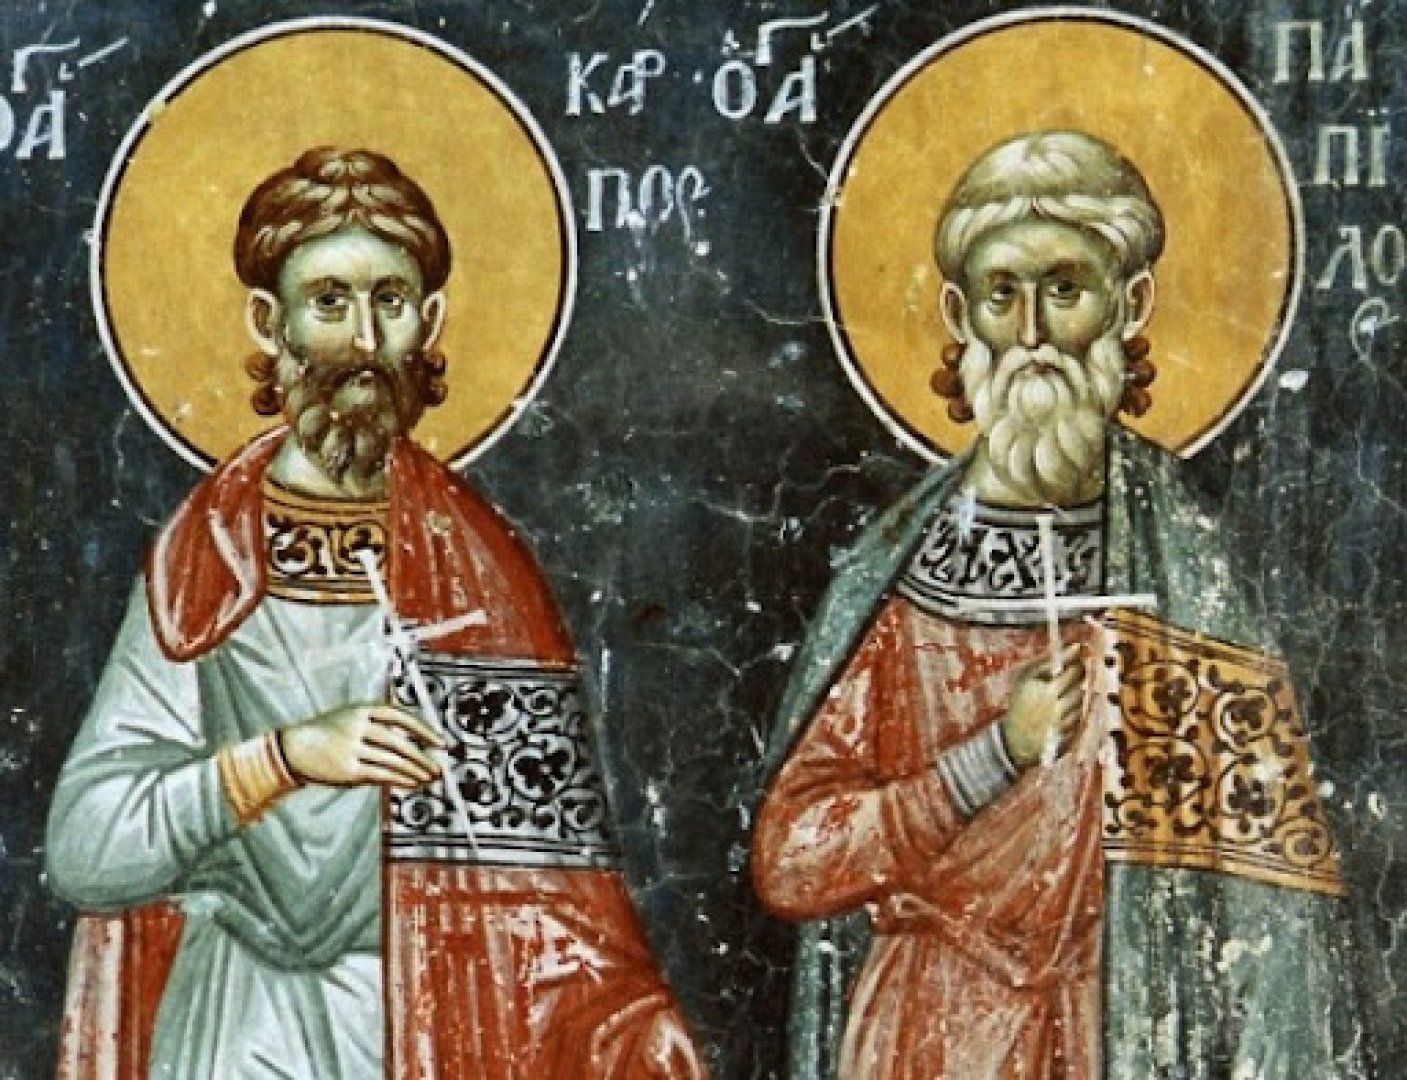 Църквата възпоменава на днешния ден свети мъченици Карп и Папила